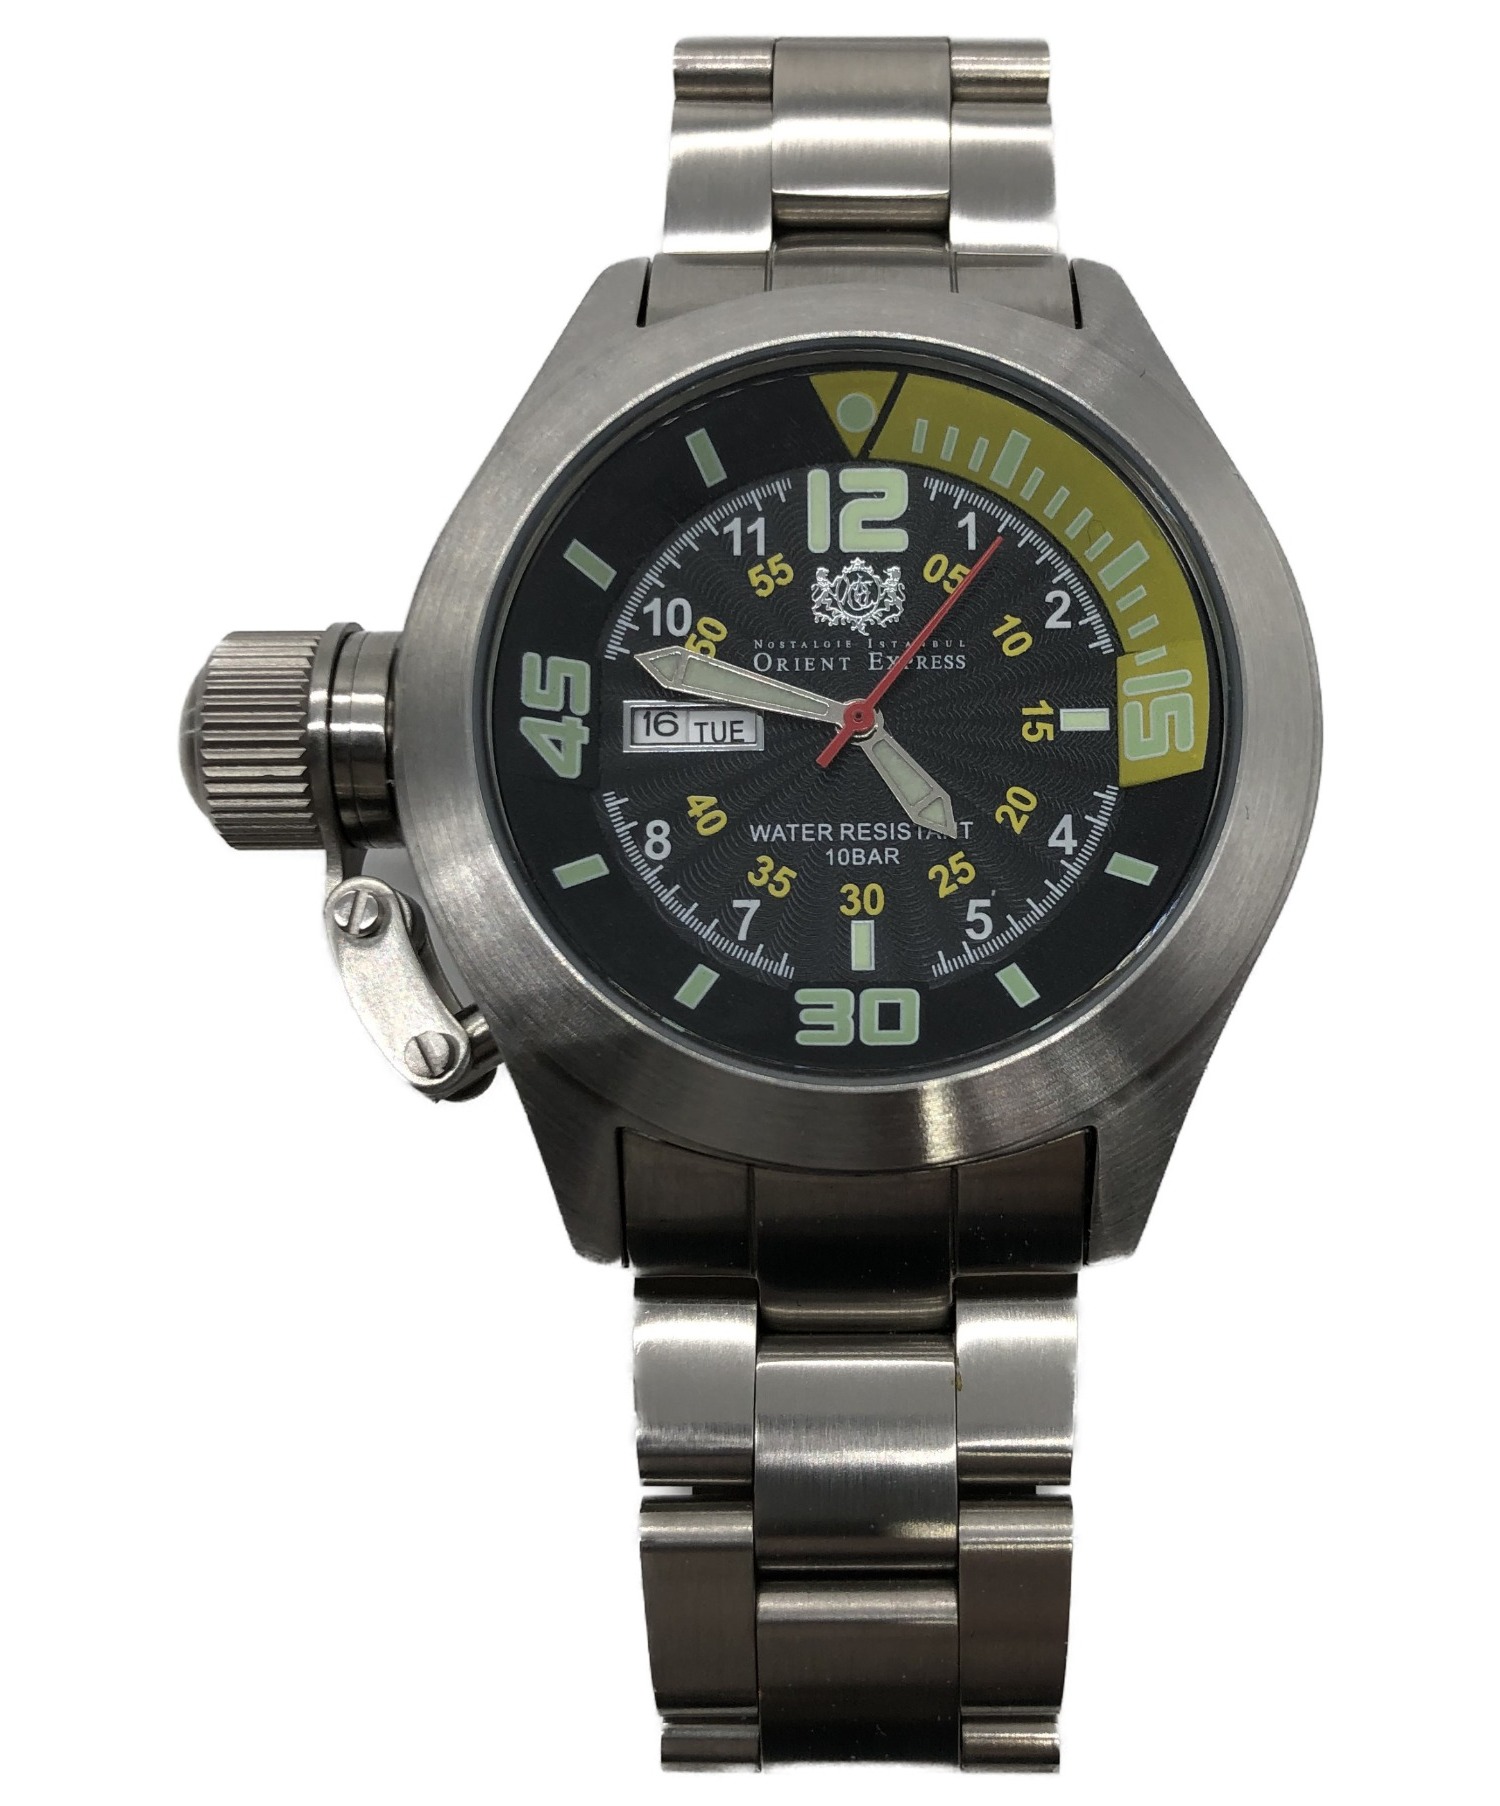 ORIENT EXPRESS (オリエント エクスプレス) 腕時計 ブラック×イエロー OA-8036 クォーツ 動作確認済み